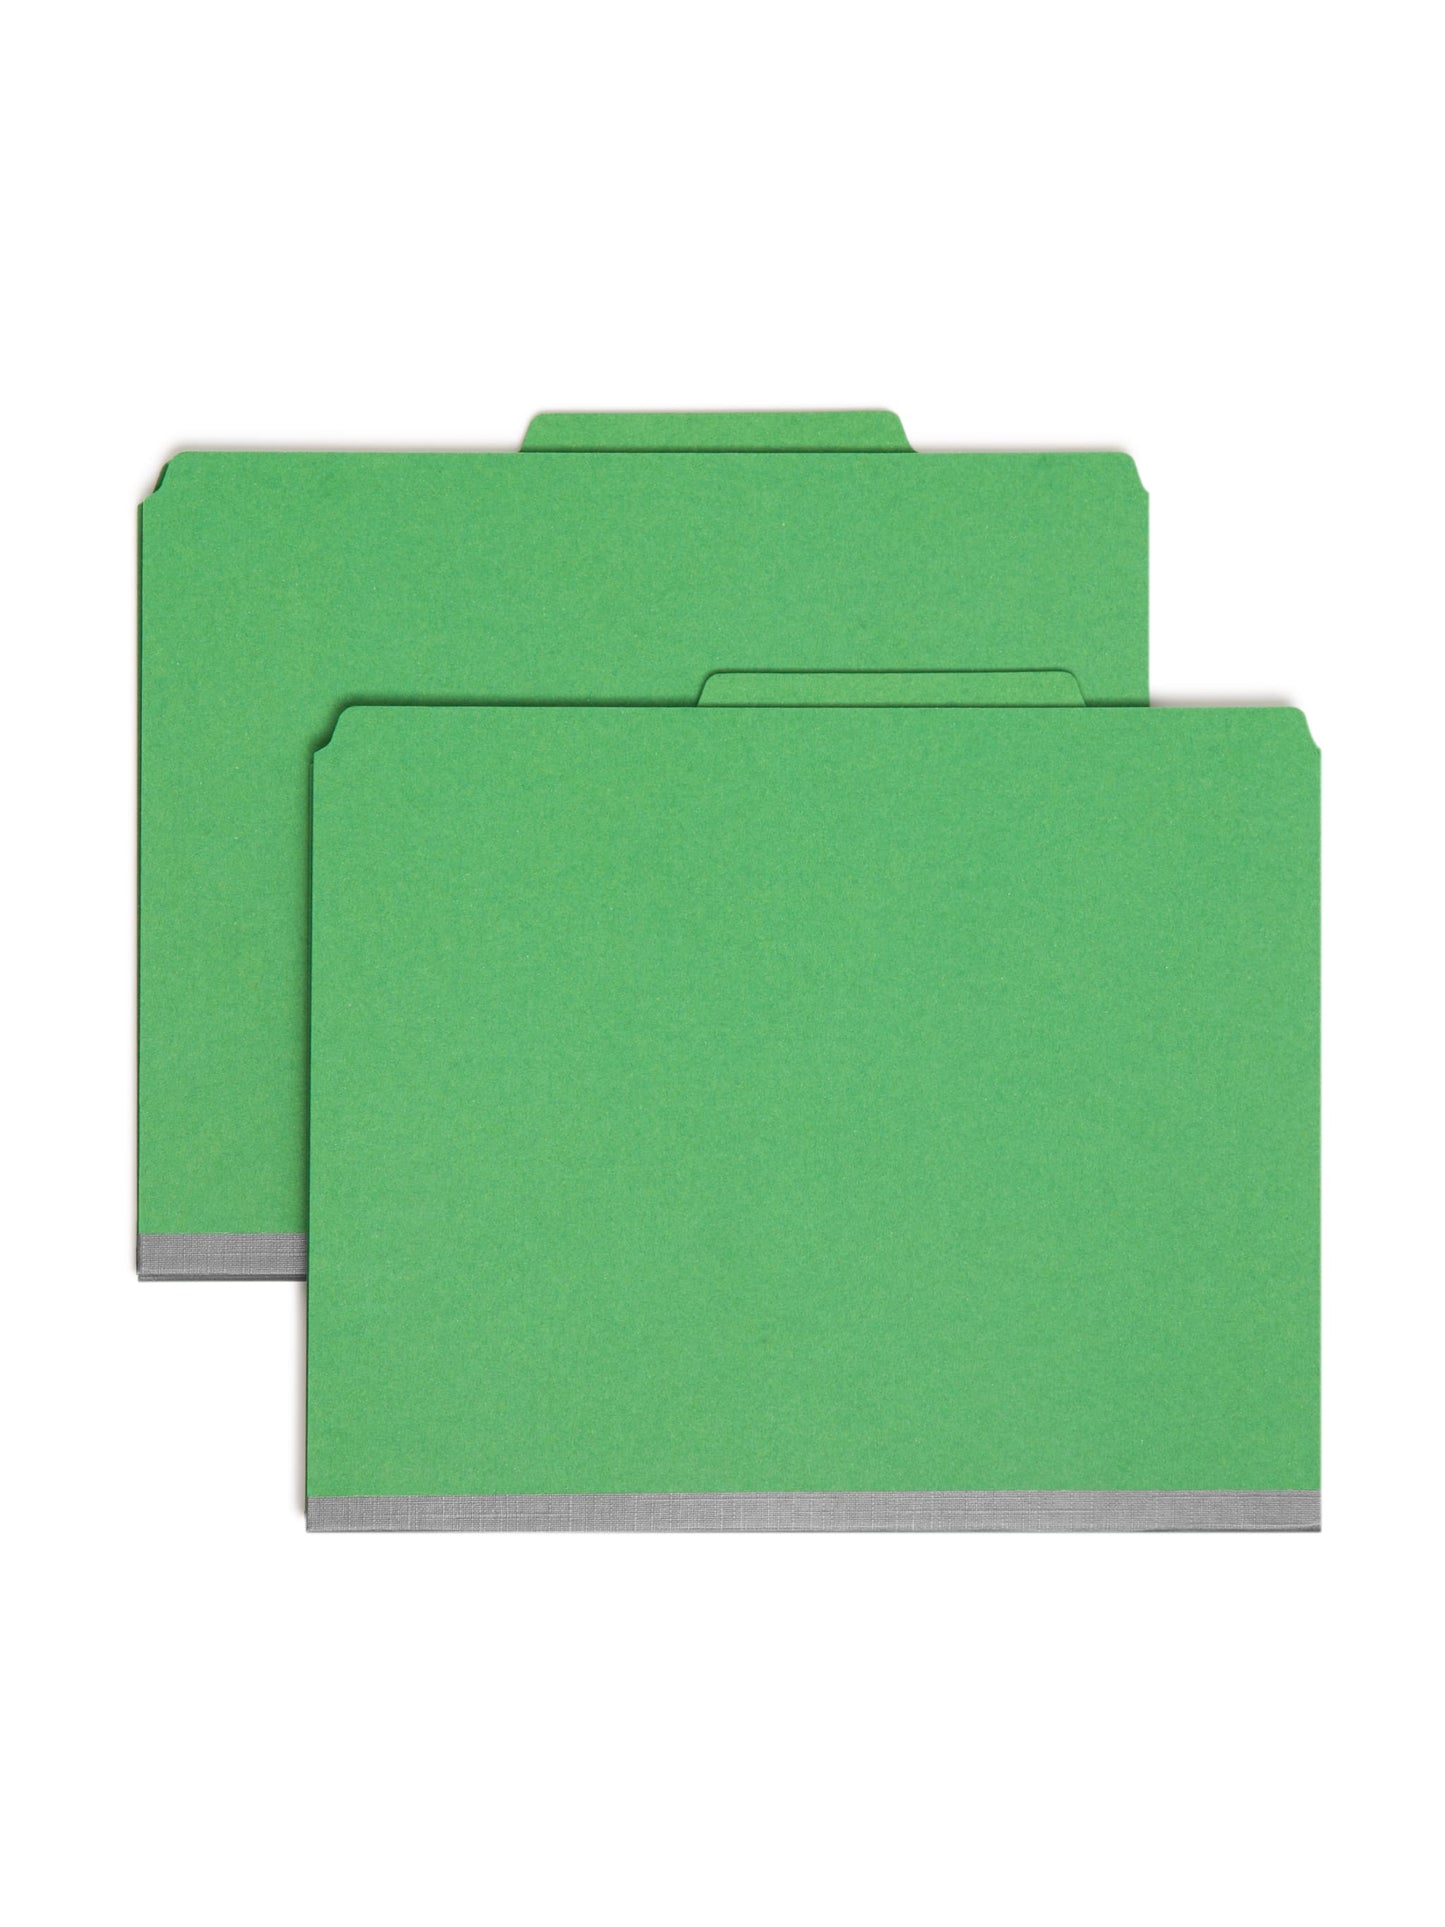 SafeSHIELD® Pressboard Classification File Folders, 1 Divider, 2 inch Expansion, Green Color, Letter Size, Set of 0, 30086486137332